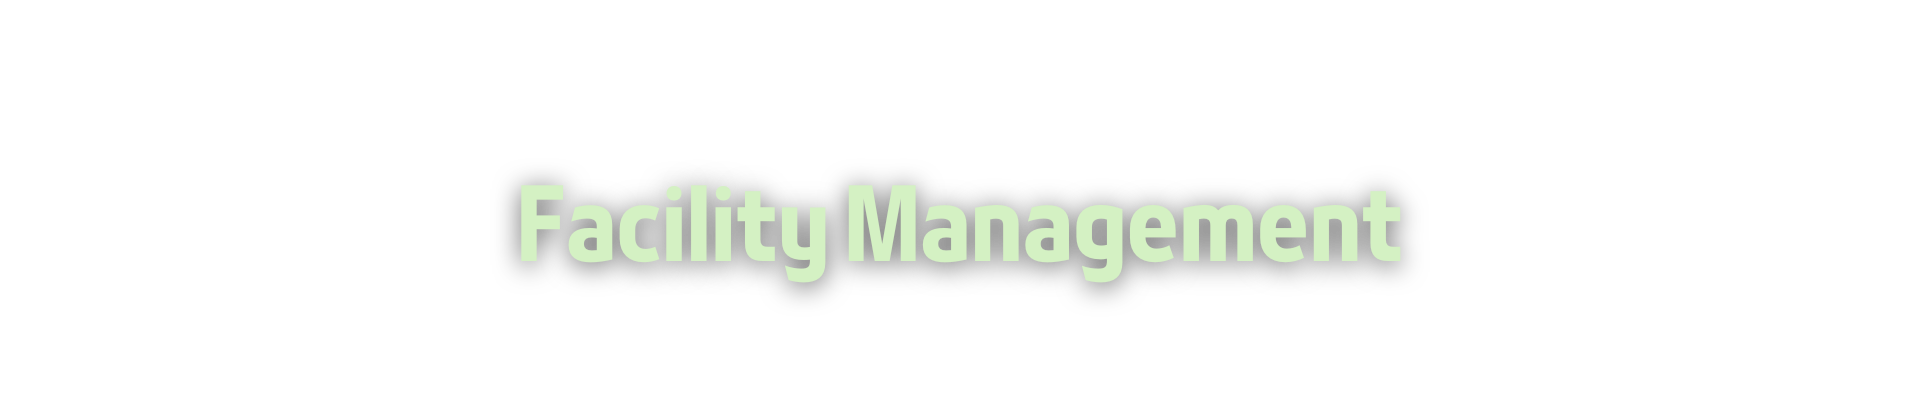 Facility Management - Ottimizzazione dei sistemi di lavoro e di gestione - salute e sicurezza, gestione energetica, partner business, relazioni esterne, back office, videosorveglianza, manodopera specializzata, formazione aziendale